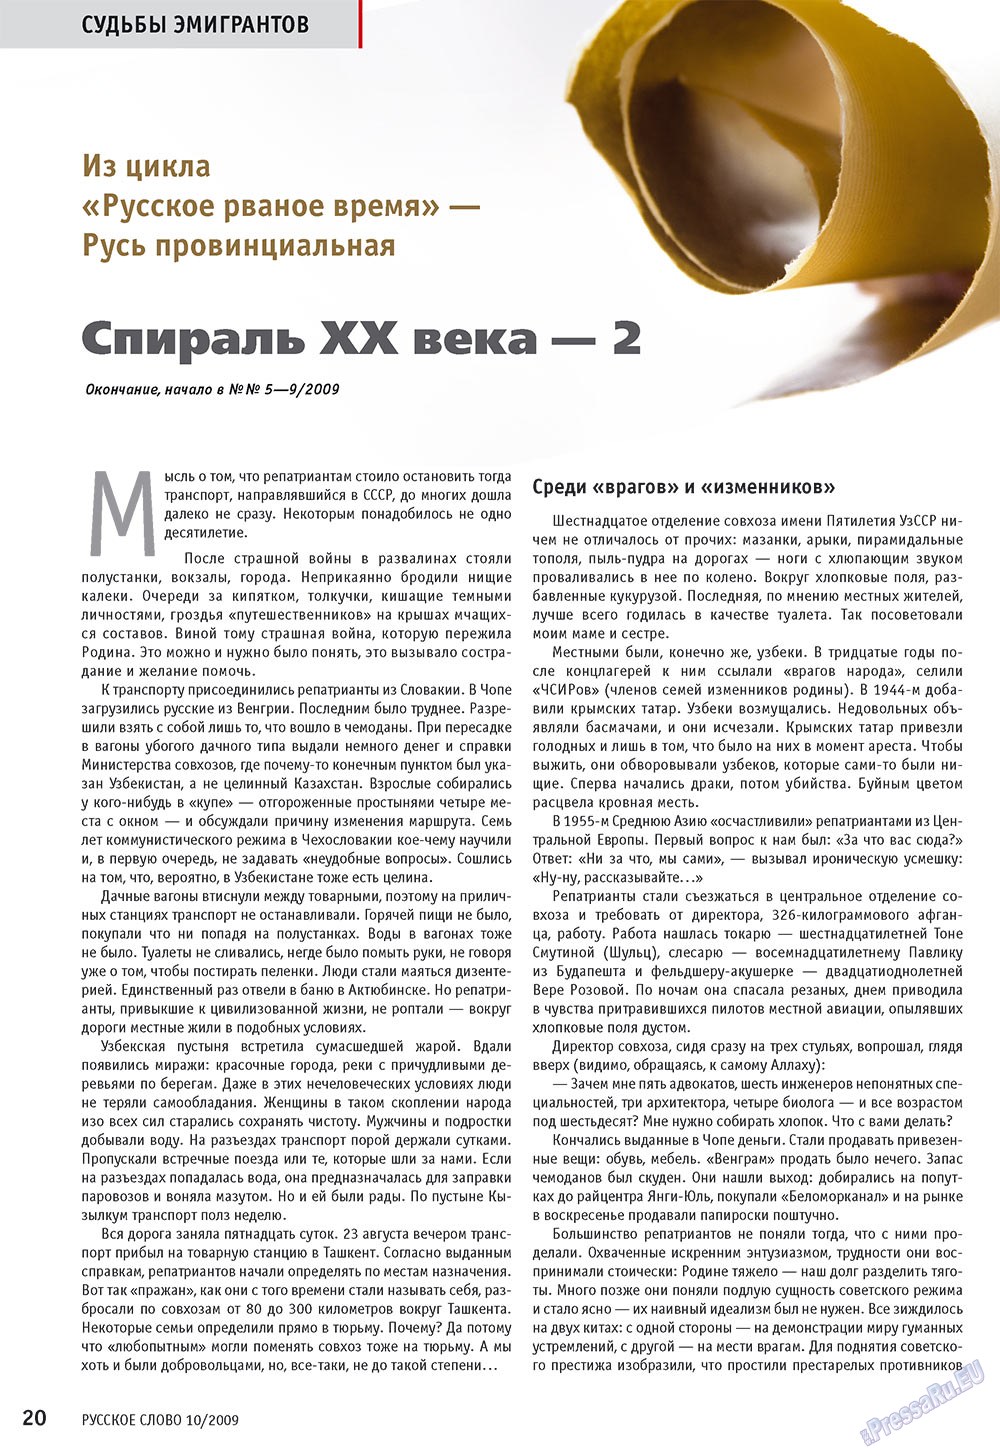 Русское слово, журнал. 2009 №10 стр.22